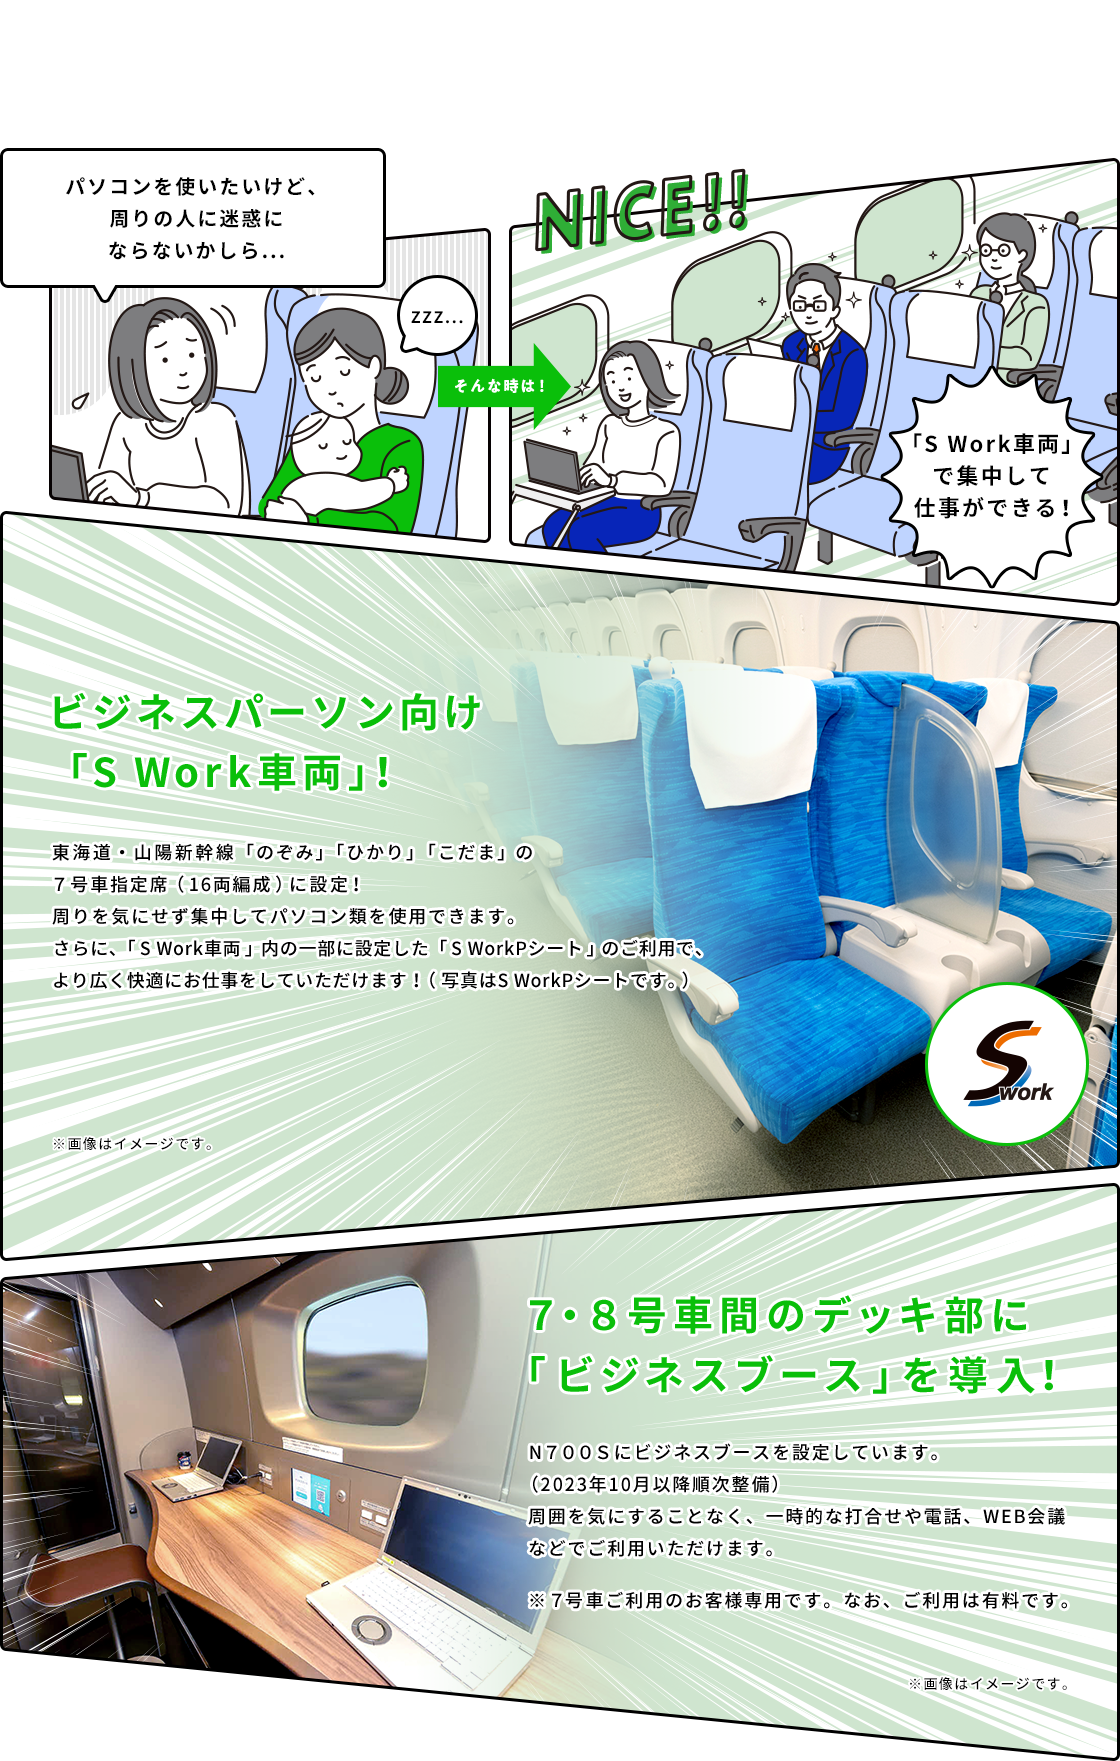 ビジネスパーソン向け「S Work車両」！東海道・山陽新幹線「のぞみ」「ひかり」「こだま」の7号車指定席（16両編成）に設定！周りを気にせず集中してパソコン類を使用できます。さらに、「S Work車両」内の一部に設定した「S WorkPシート」のご利用で、より広く快適にお仕事をしていただけます！（写真はS WorkPシートです。） 7・8号車間のデッキ部に「ビジネスブース」を導入！ N700Sにビジネスブースを設定しています。（2023年10月以降順次整備） 周囲を気にすることなく、一時的な打合せや電話、WEB会議などでご利用いただけます。 ※7号車ご利用のお客様専用です。なお、ご利用は有料です。